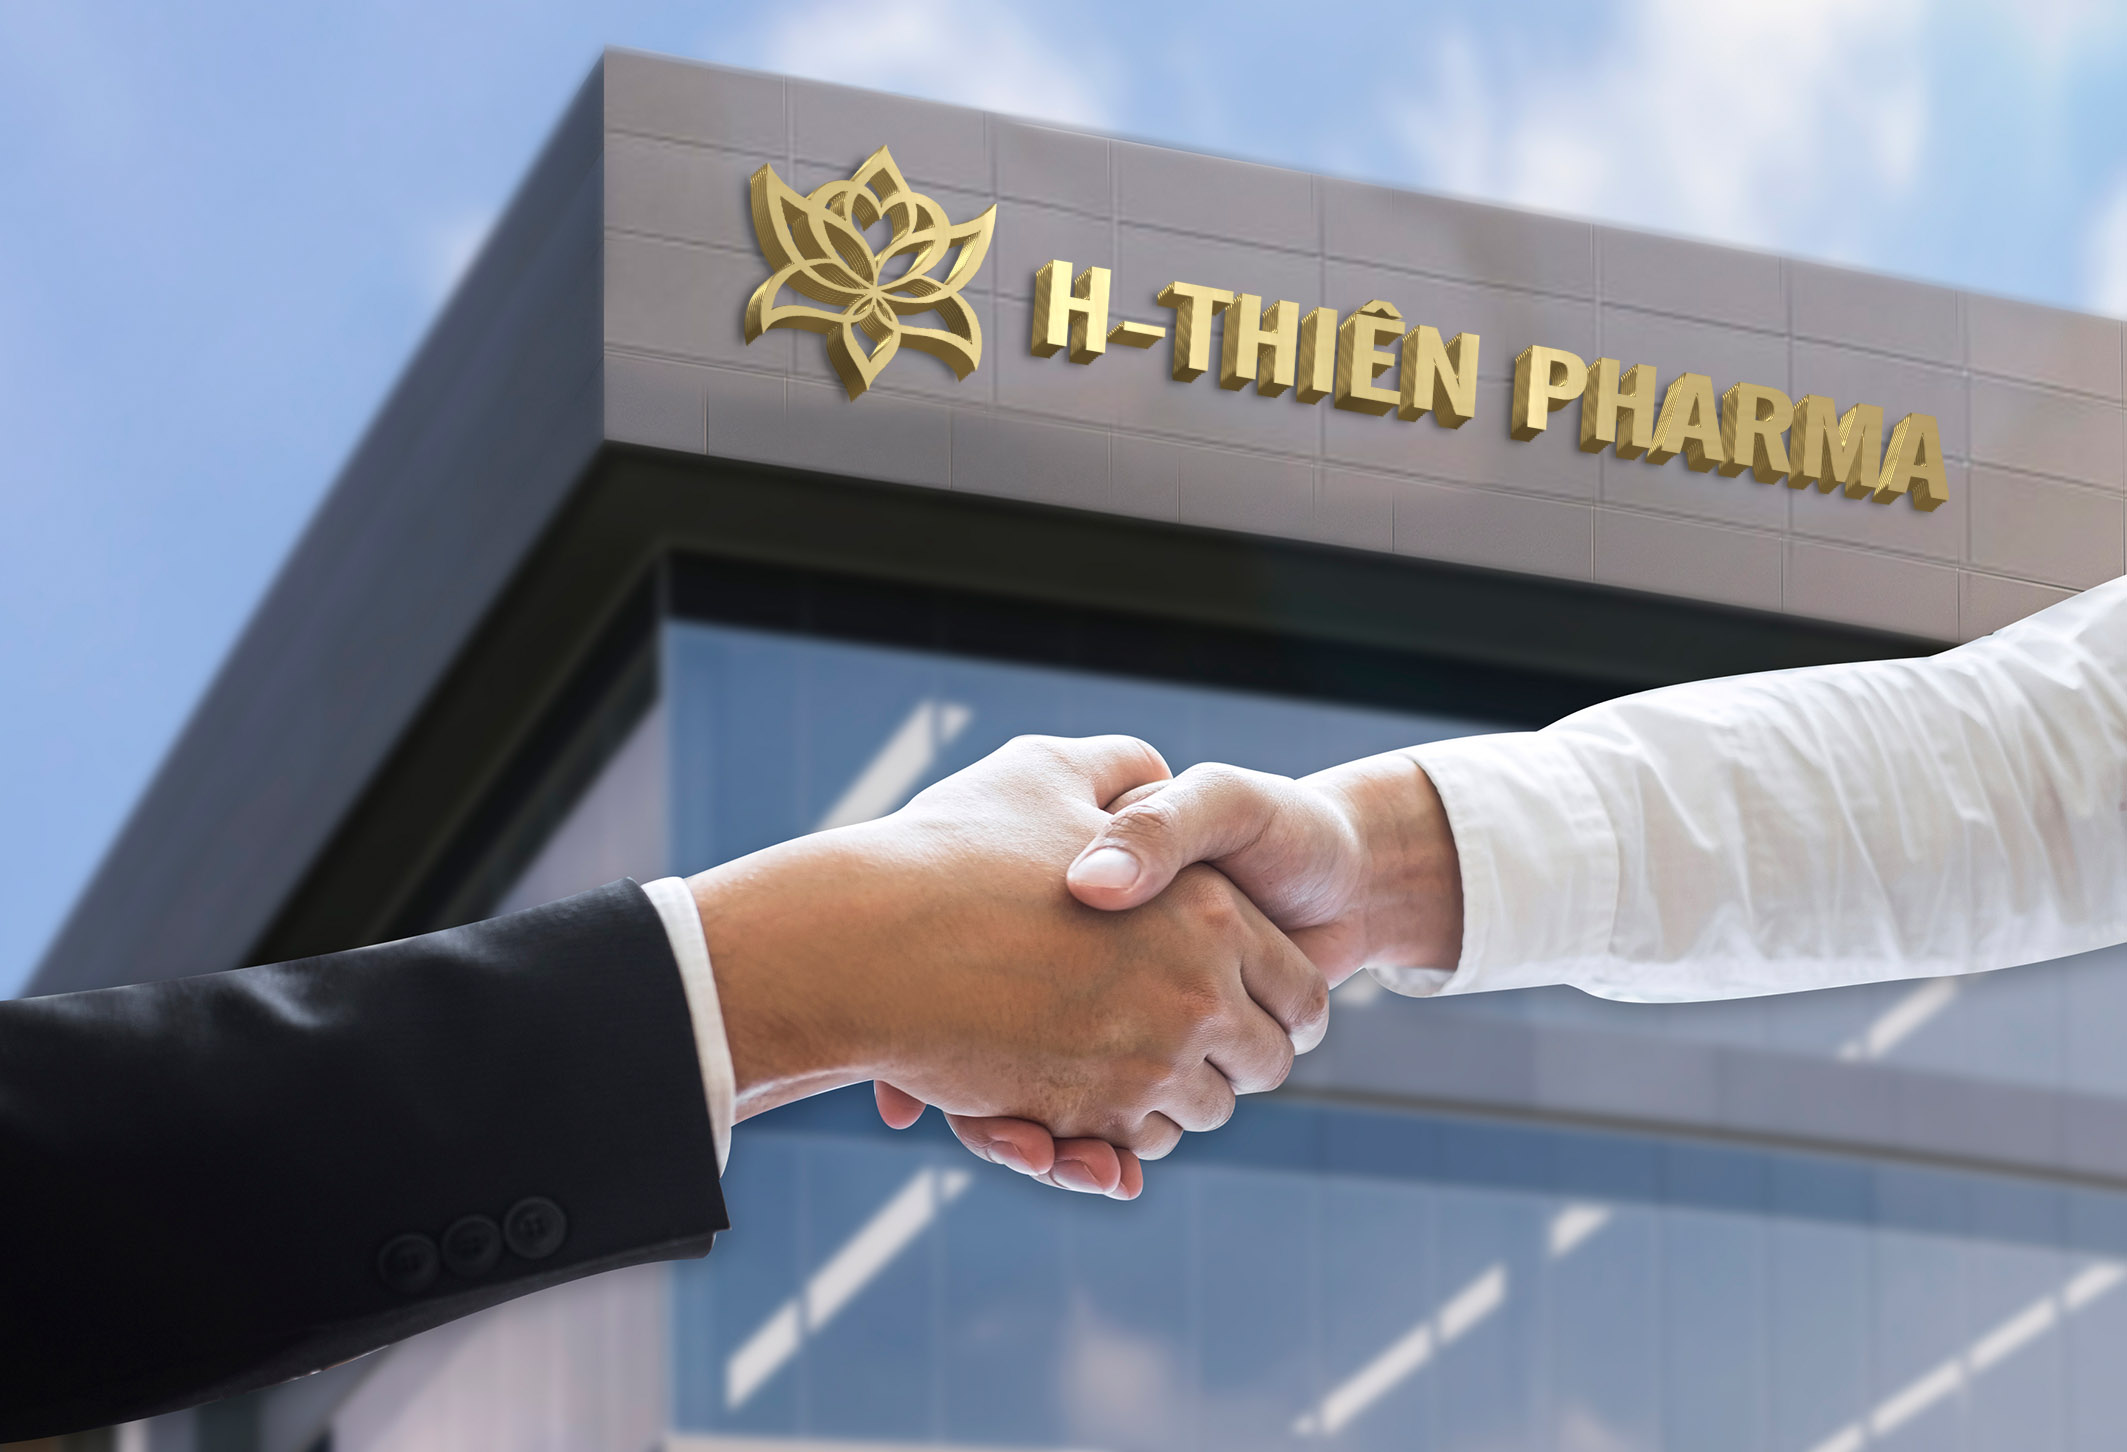 Giới thiệu – H-THIEN Pharma